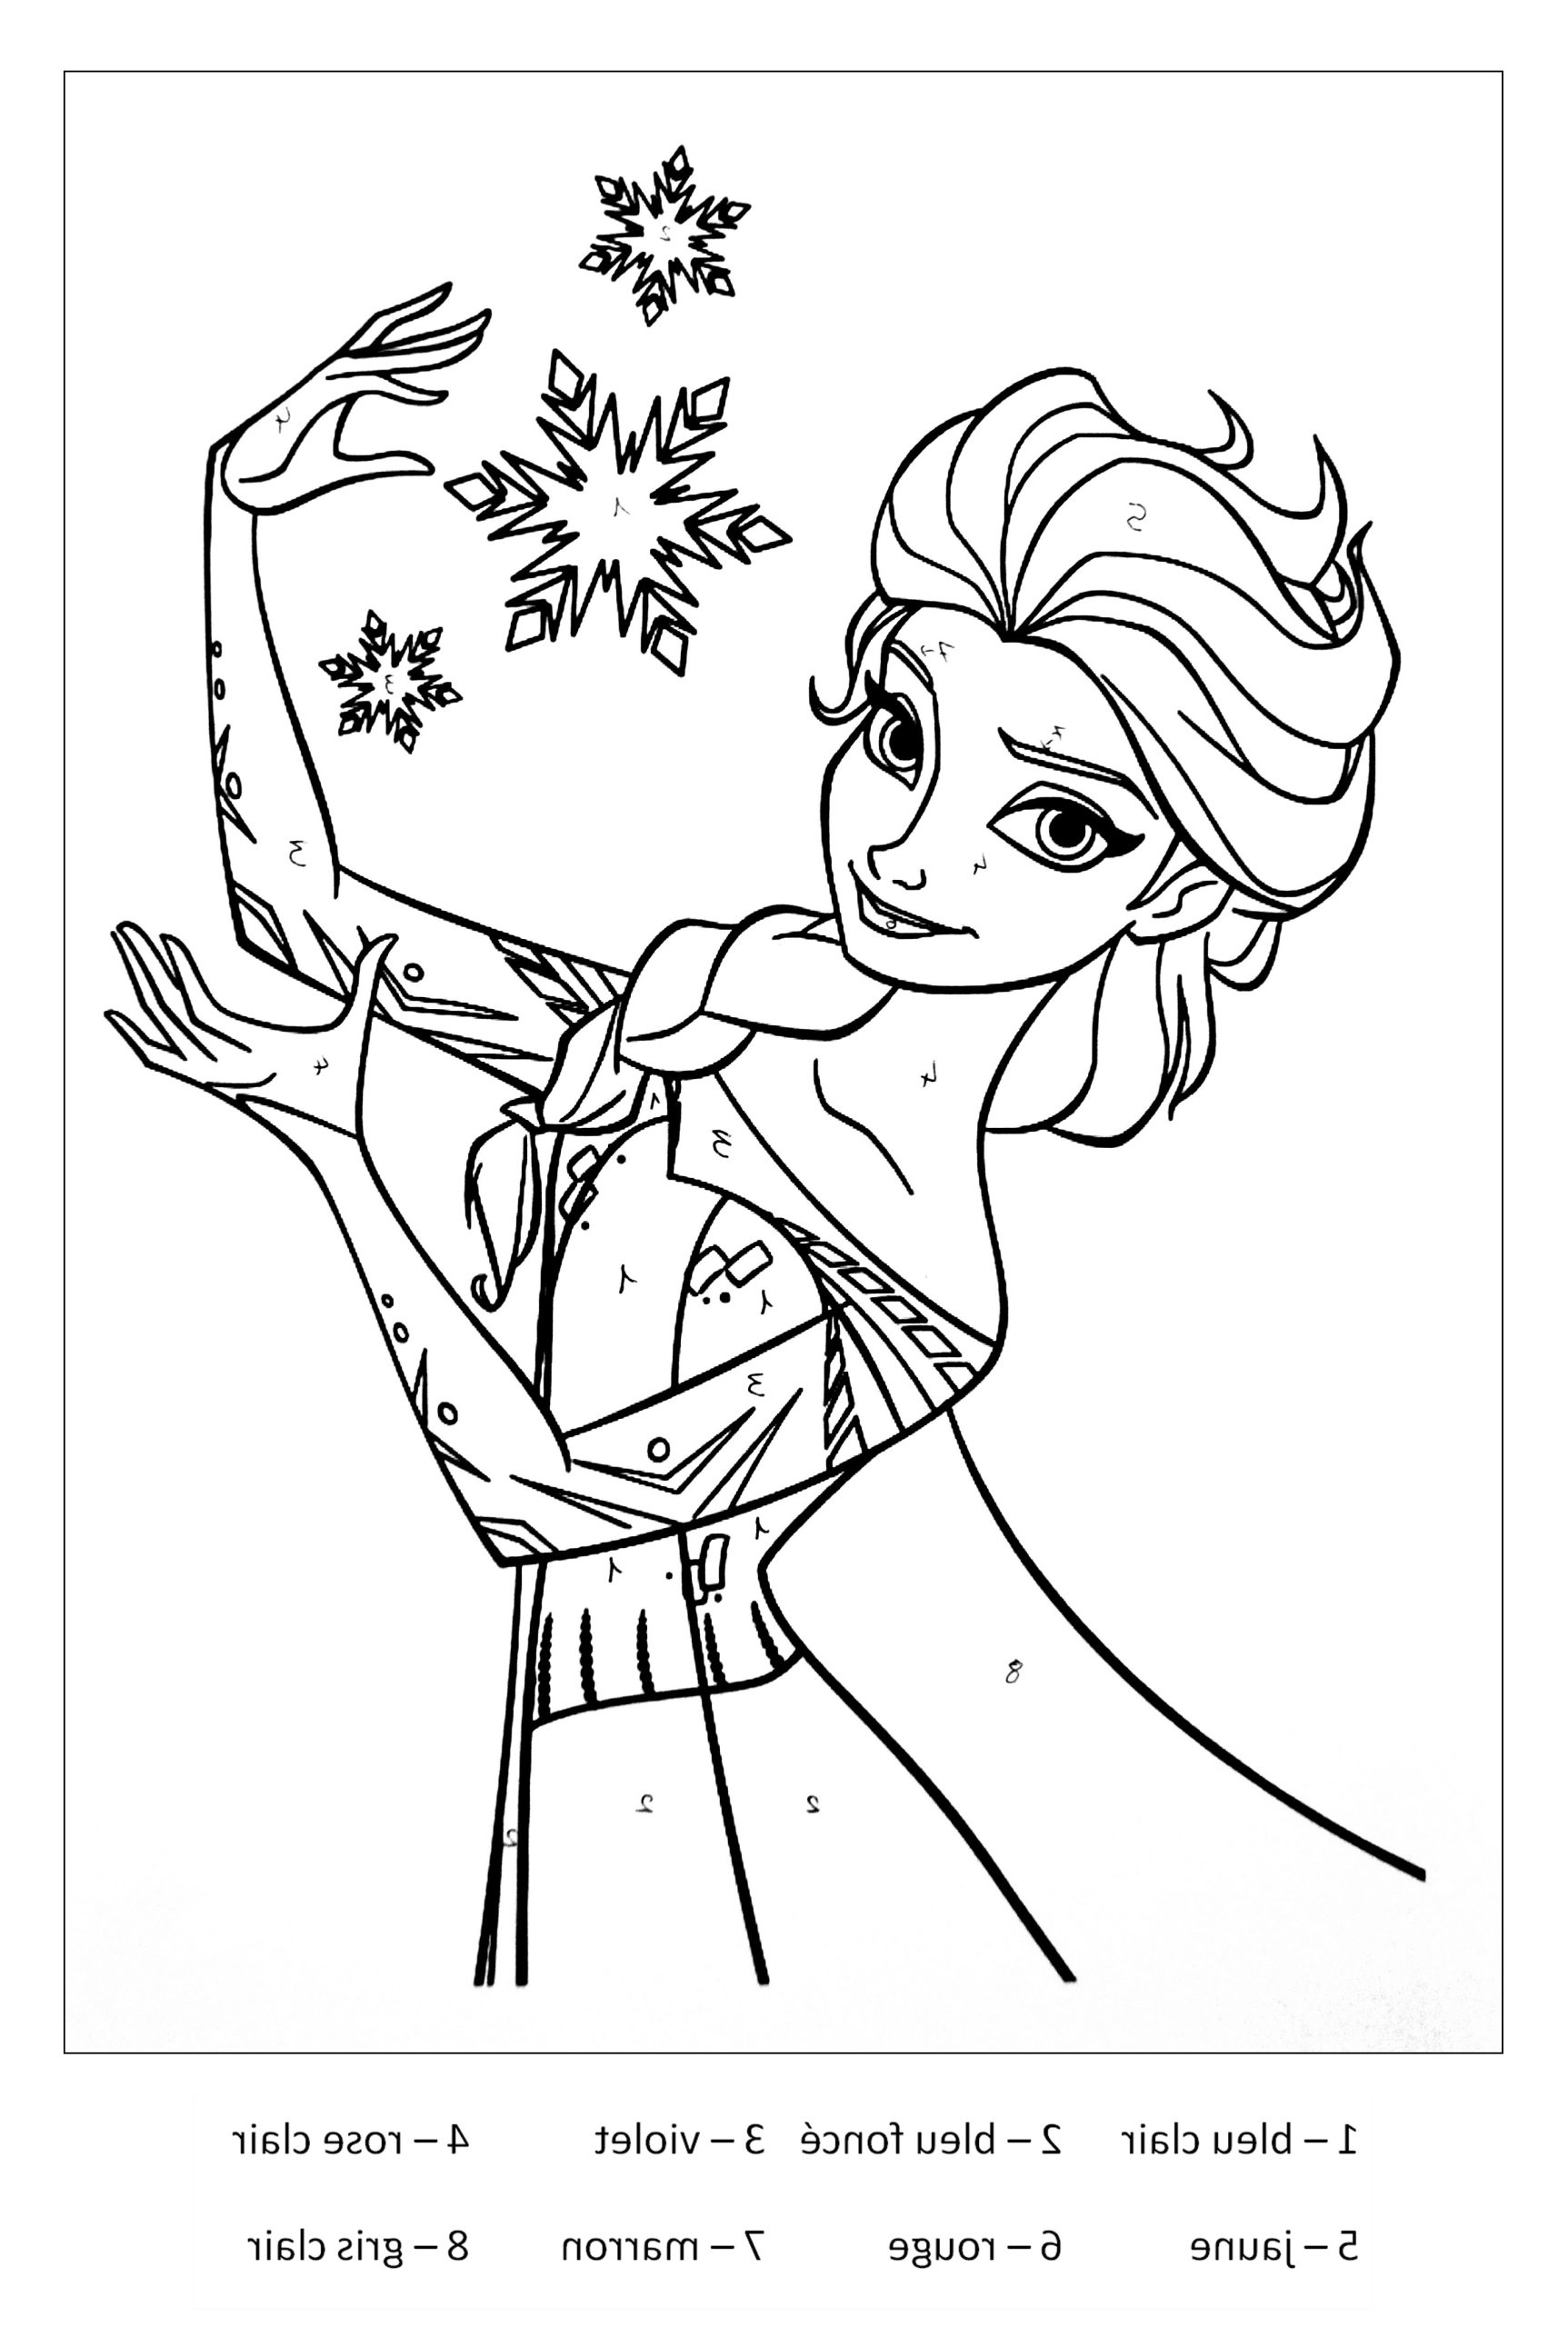 image=elsa la reine des neiges coloriage la reine des neiges elsa 3 1